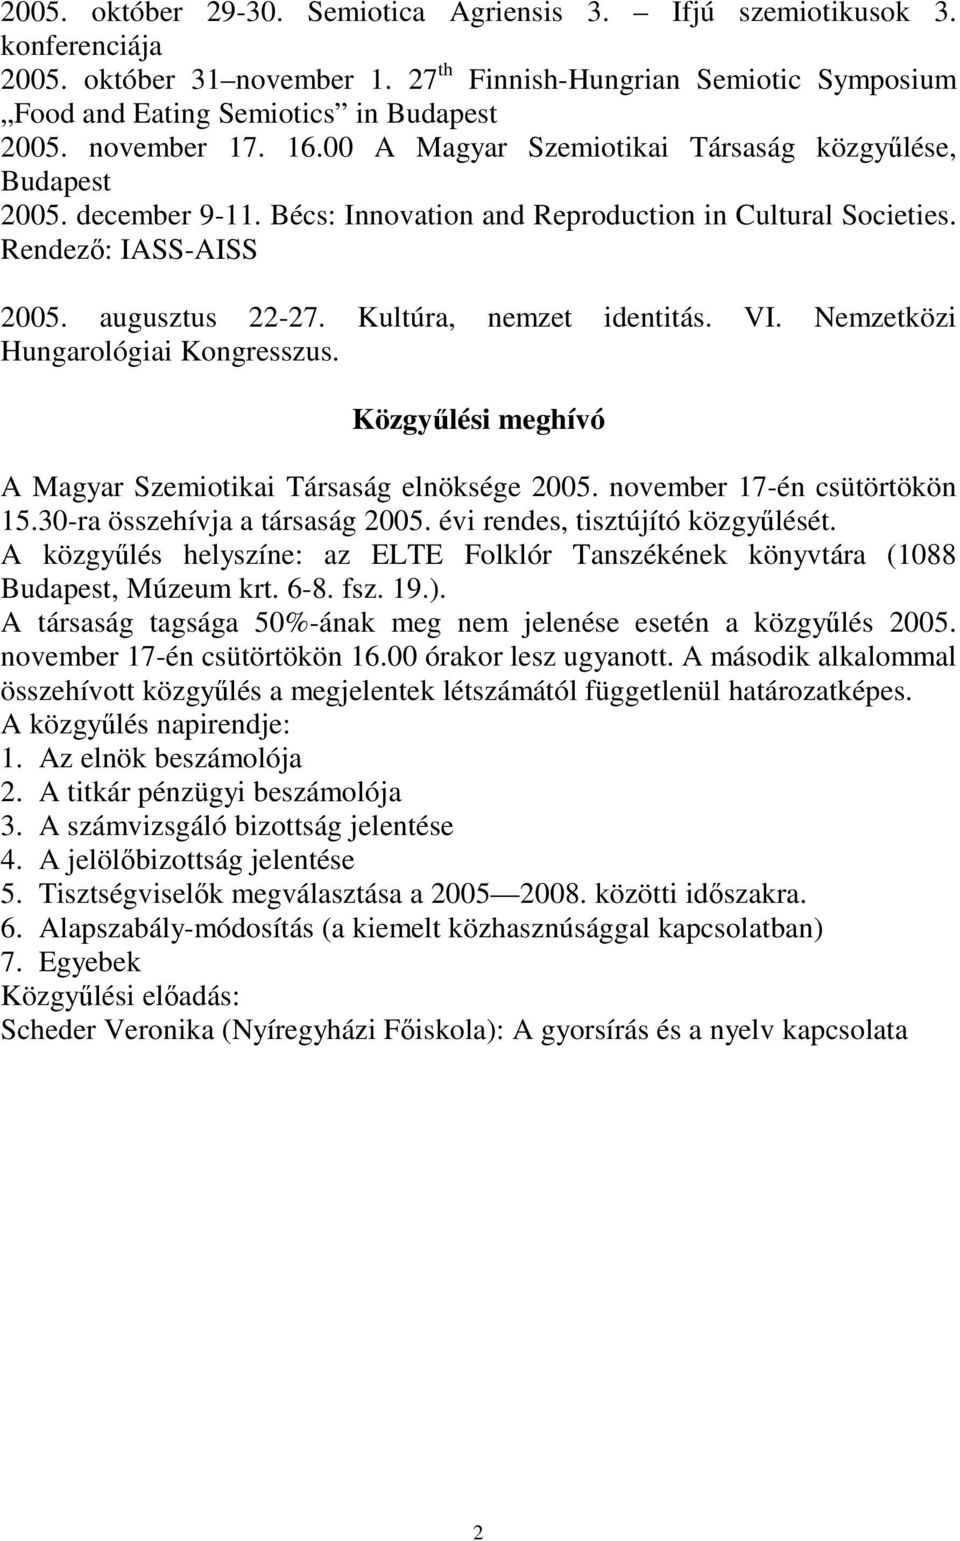 Kultúra, nemzet identitás. VI. Nemzetközi Hungarológiai Kongresszus. Közgyűlési meghívó A Magyar Szemiotikai Társaság elnöksége 2005. november 17-én csütörtökön 15.30-ra összehívja a társaság 2005.